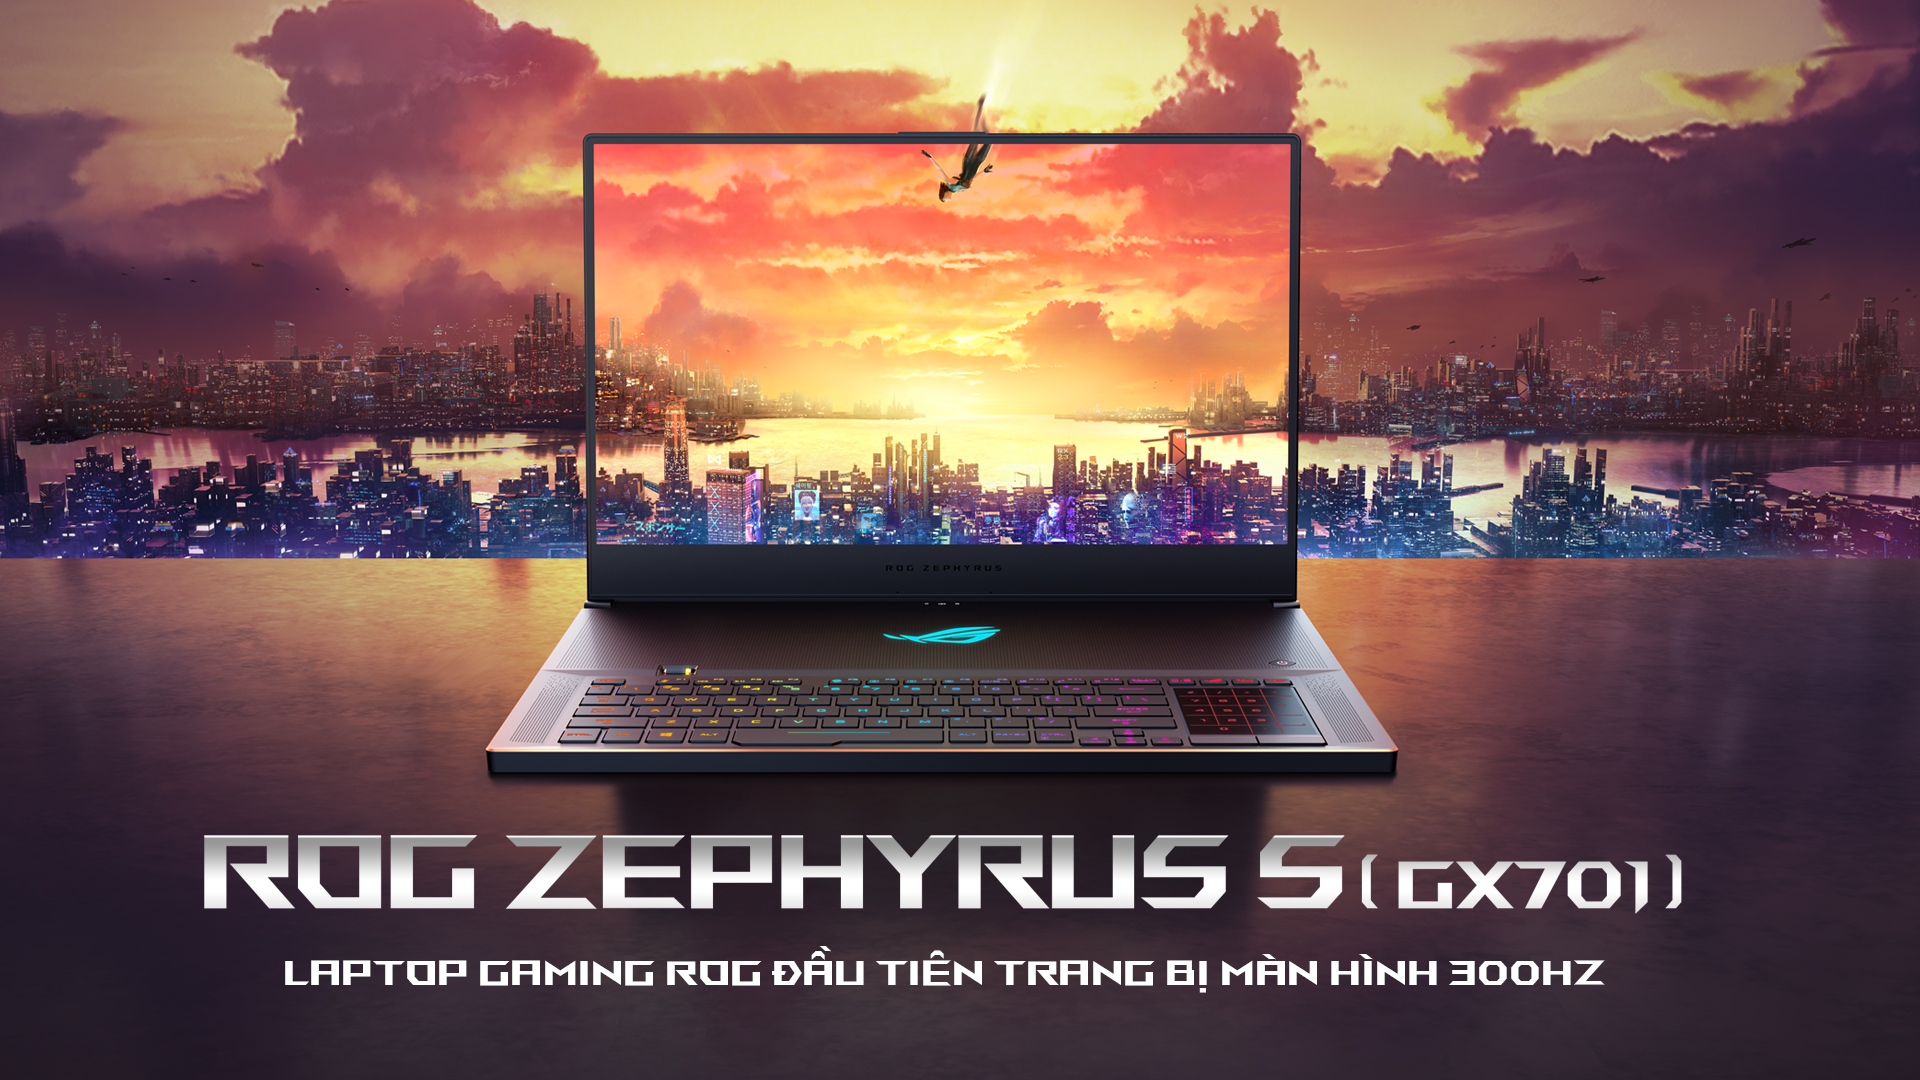 ASUS ROG giới thiệu Zephyrus S GX701, laptop gaming tần số quét 300Hz tại IFA 2019